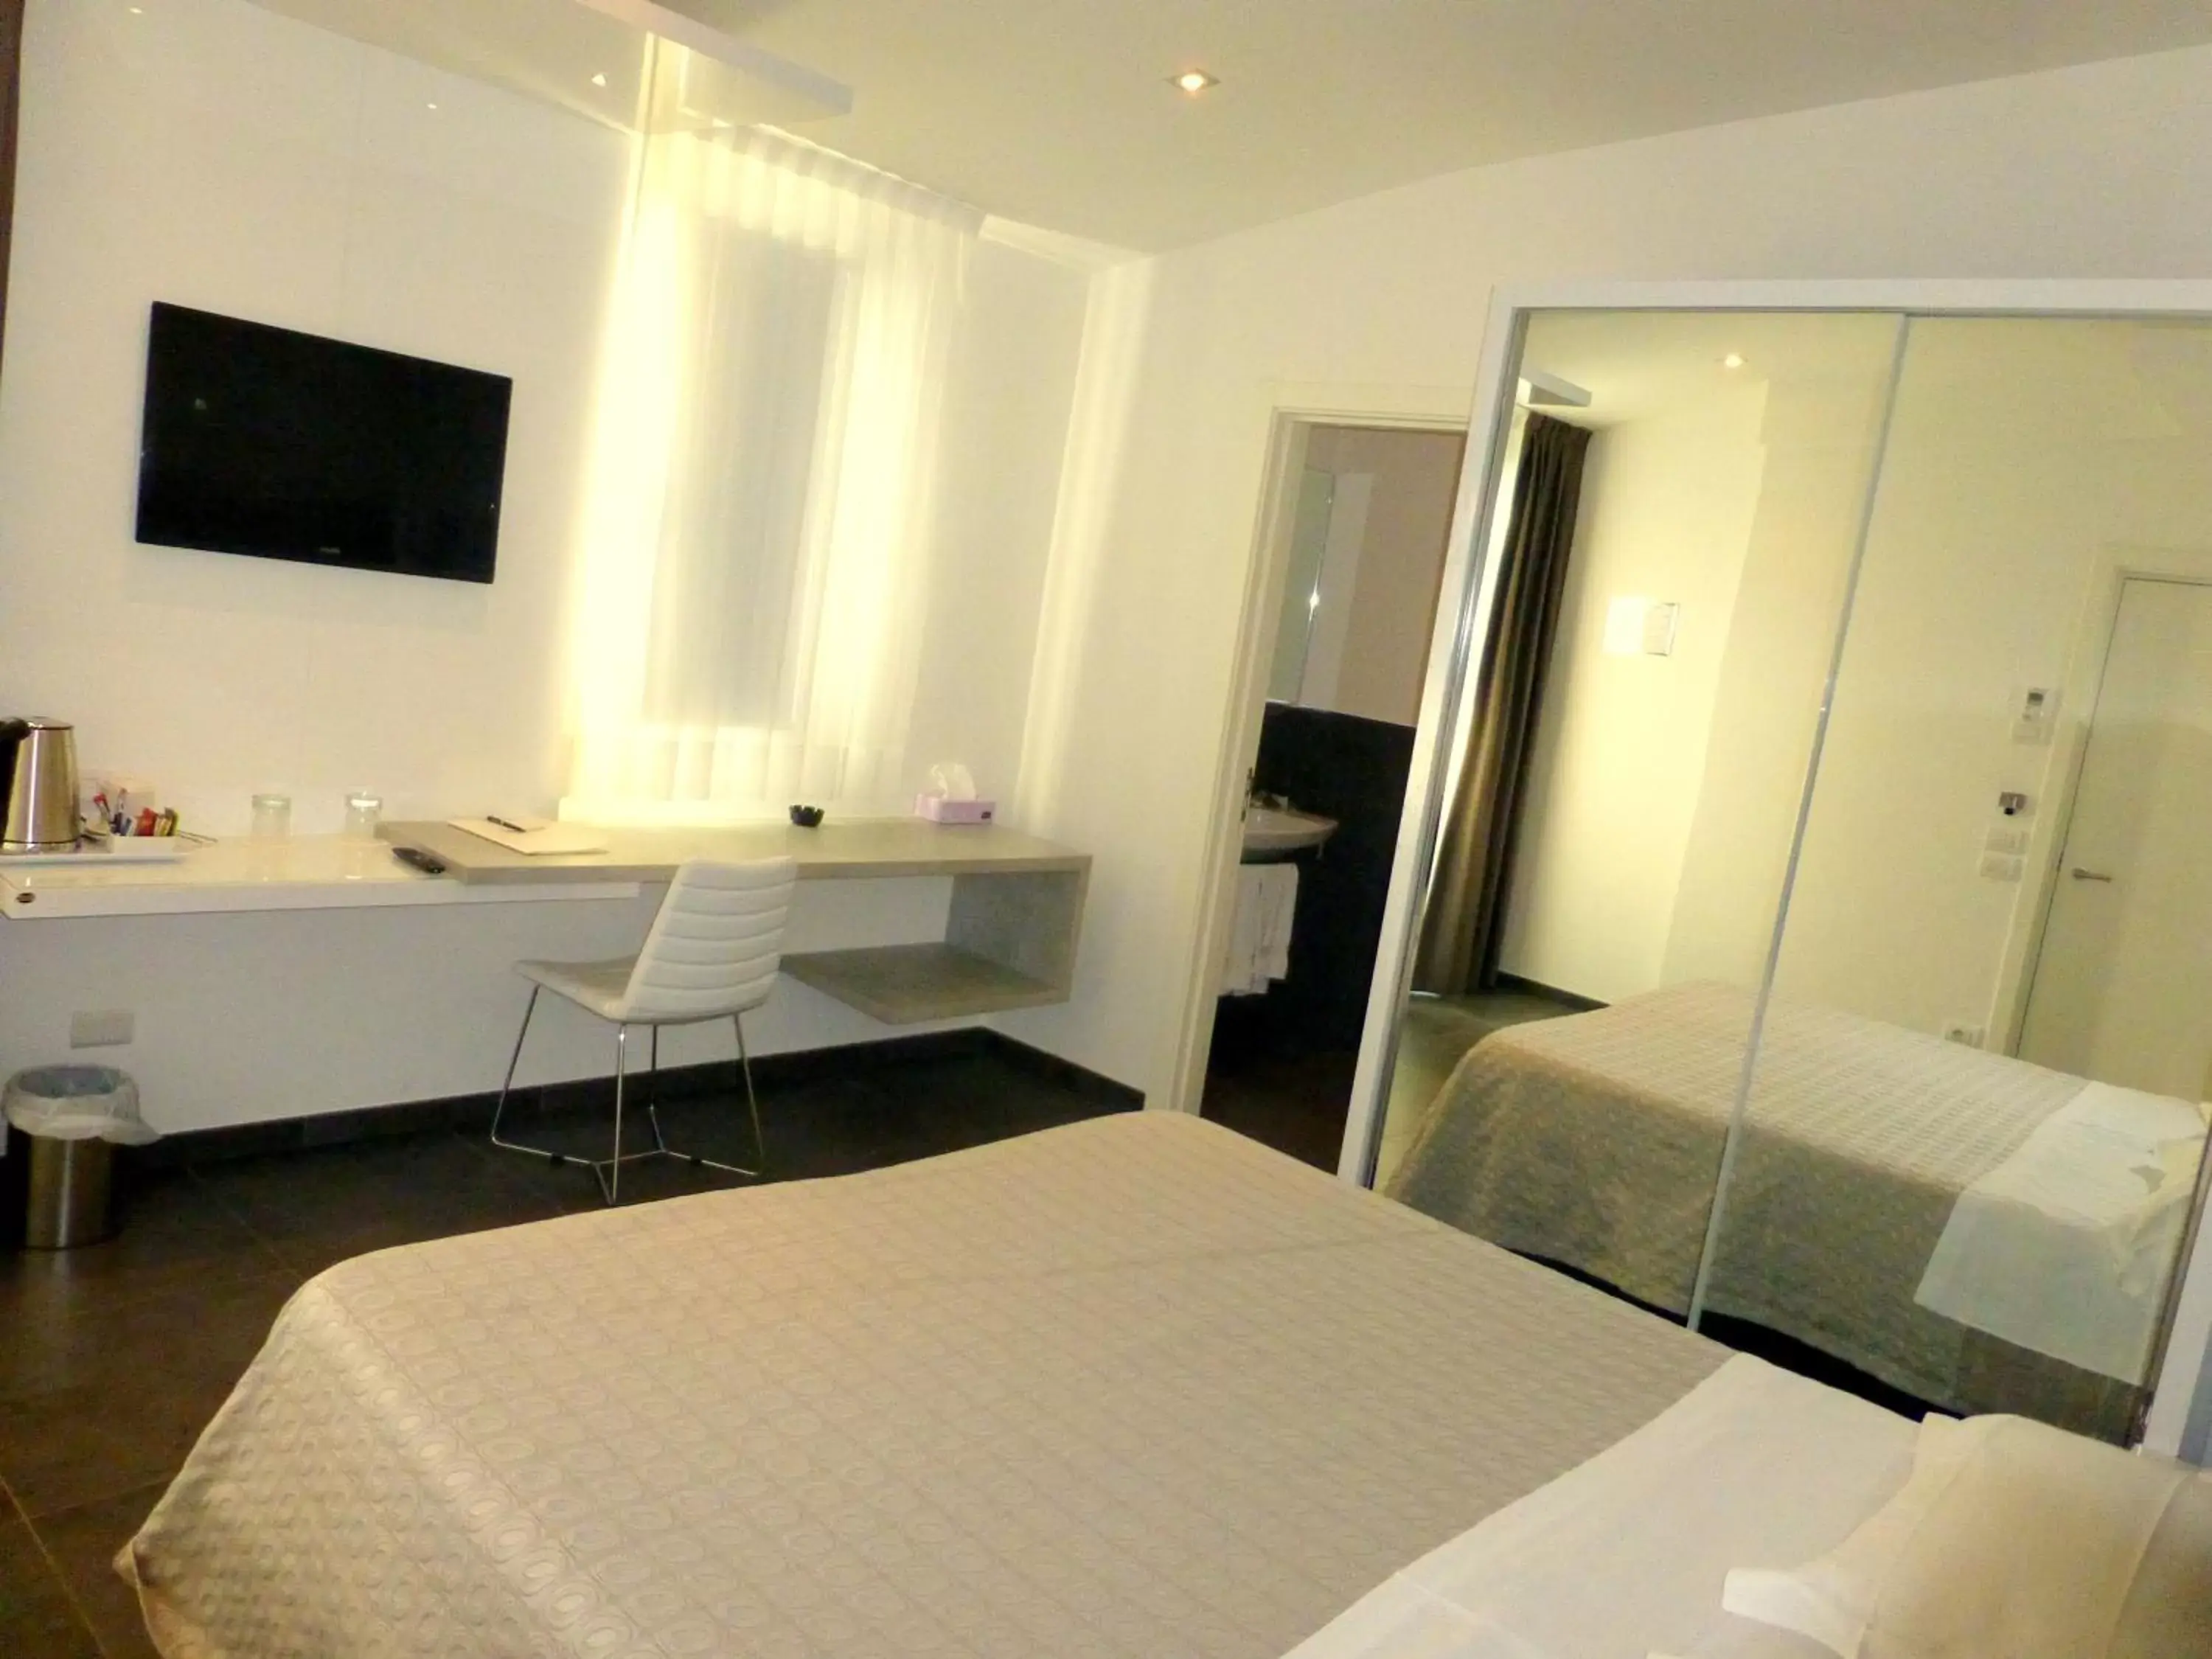 TV and multimedia, Bed in Baldinini Hotel